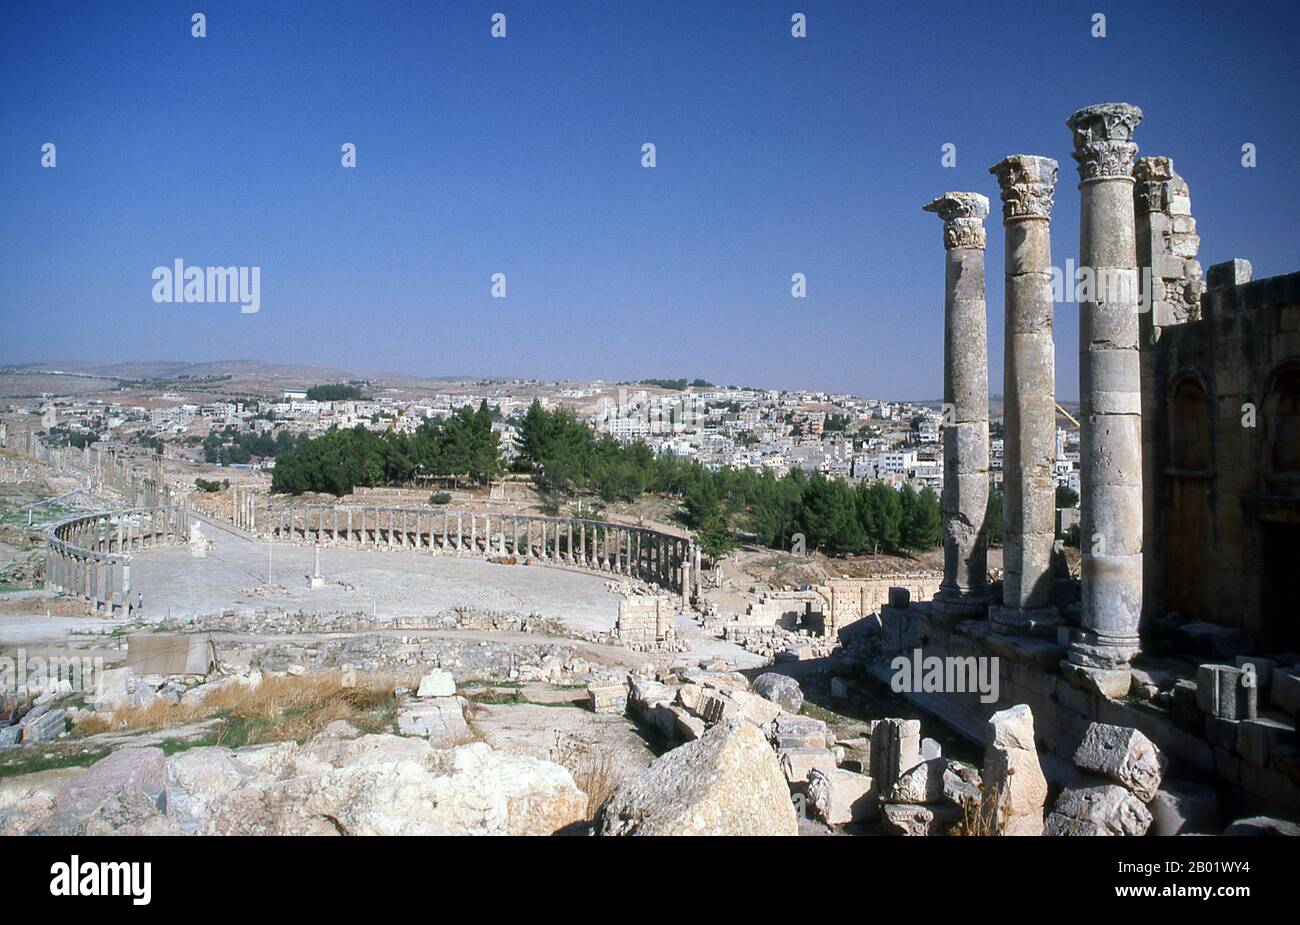 Giordania: Il Tempio di Zeus e il foro ovale nell'antica città greco-romana di Jerash. Jerash è il sito delle rovine della città greco-romana di Gerasa, chiamata anche Antiochia sul fiume d'oro. Jerash è considerata una delle città romane più importanti e meglio conservate del vicino Oriente. Era una città della Decapolis. Recenti scavi mostrano che Jerash era già abitata durante l'età del bronzo (3200-1200 a.C.). Dopo la conquista romana nel 63 a.C. Jerash e le terre circostanti furono annesse dalla provincia romana della Siria, e in seguito si unirono alle città della Decapoli. Foto Stock